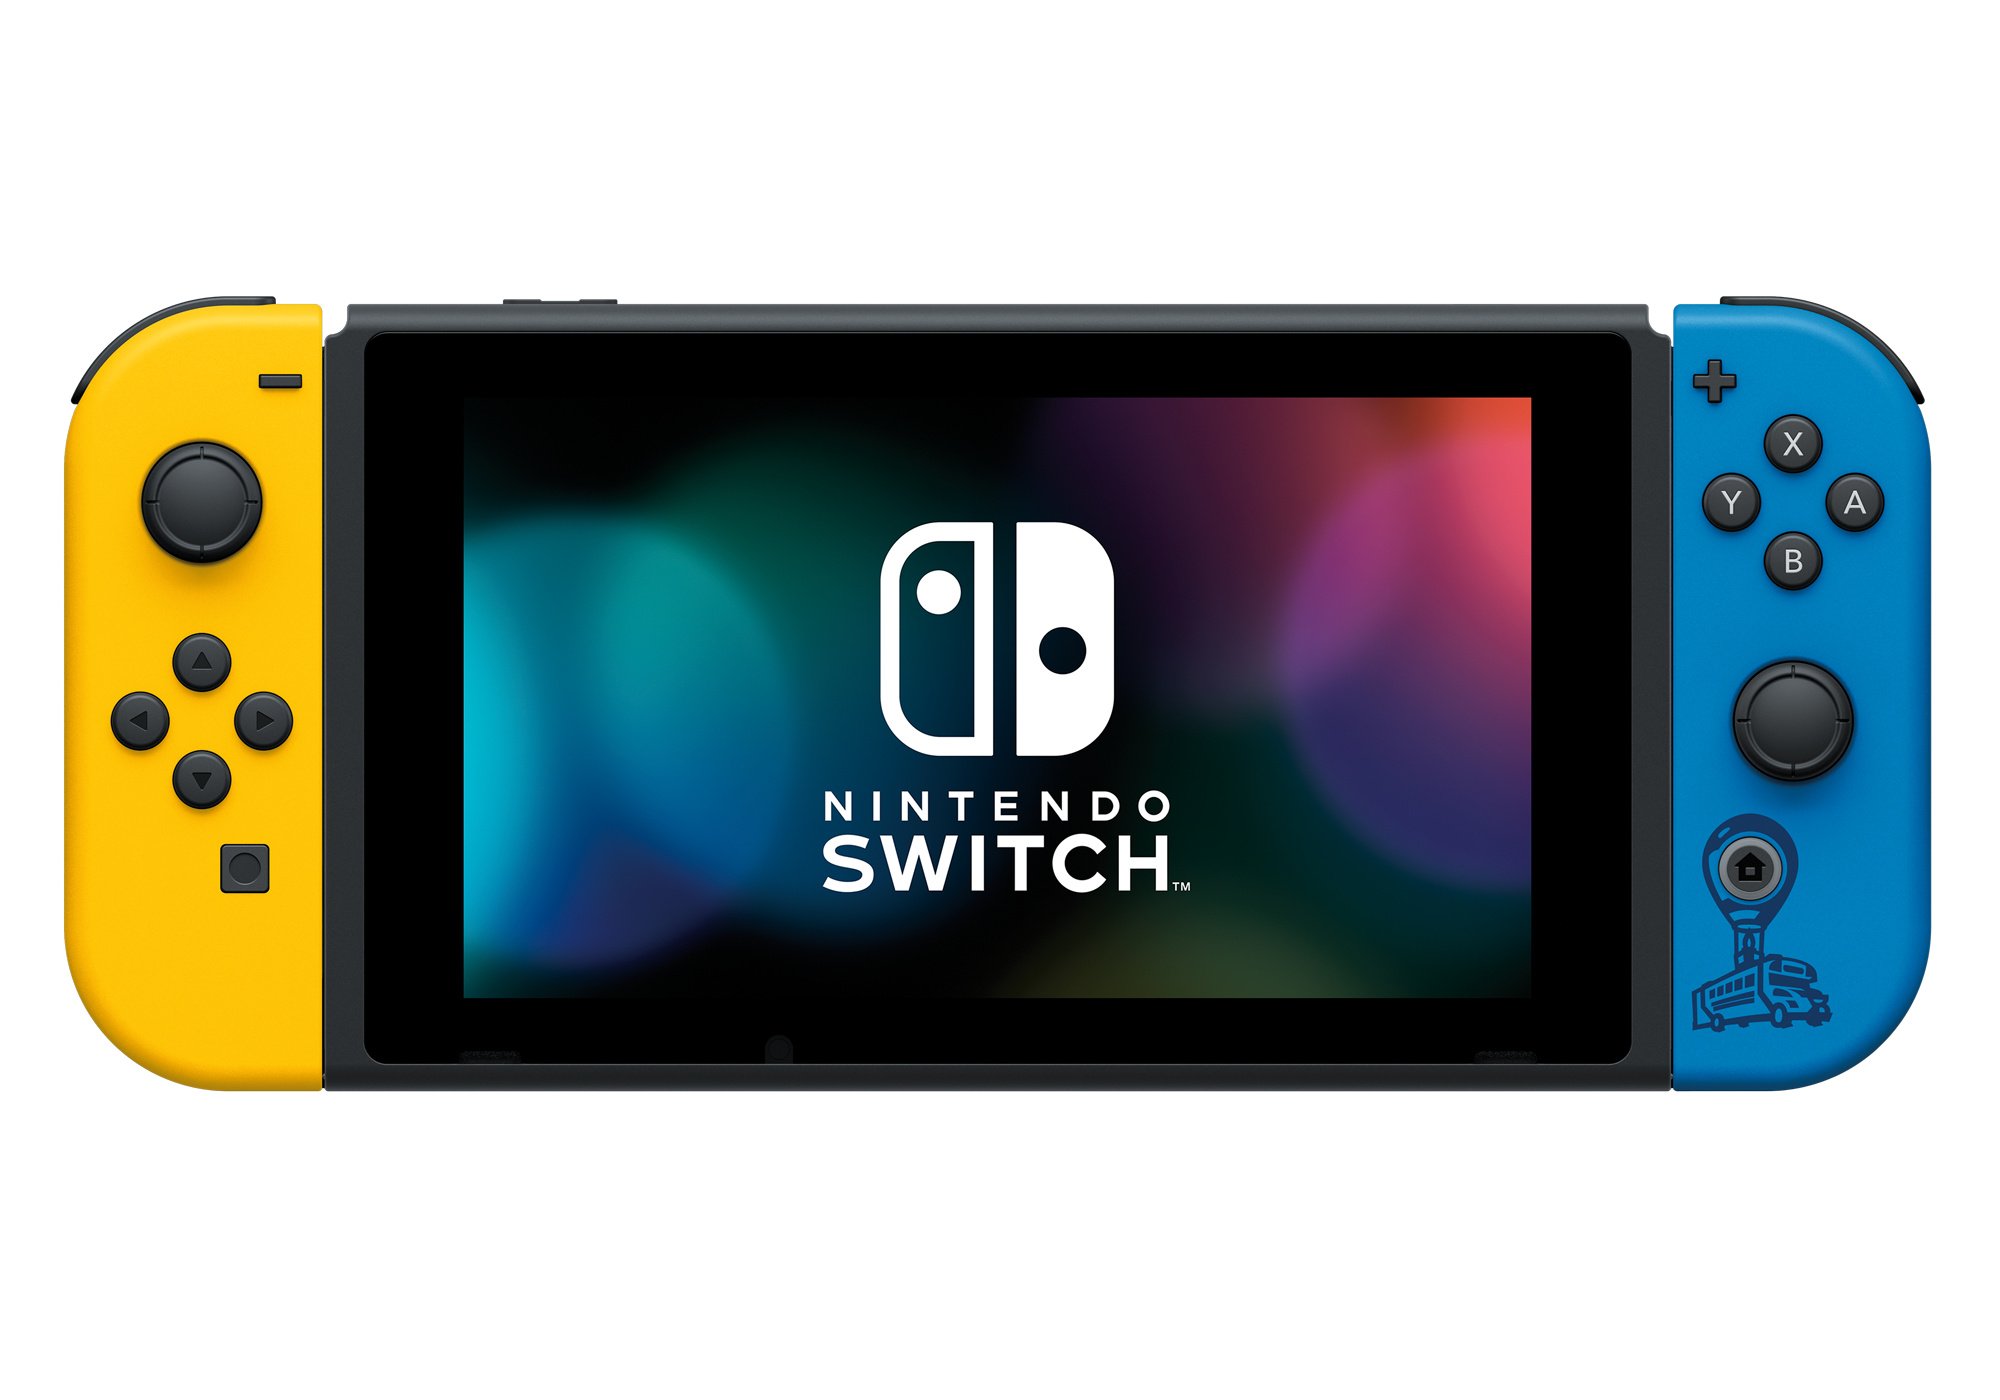 Uma edição limitada Fortnite Nintendo Switch Bundle foi anunciada para a Europa e Austrália / Nova Zelândia Hads-001-imgefnyb-f1.original